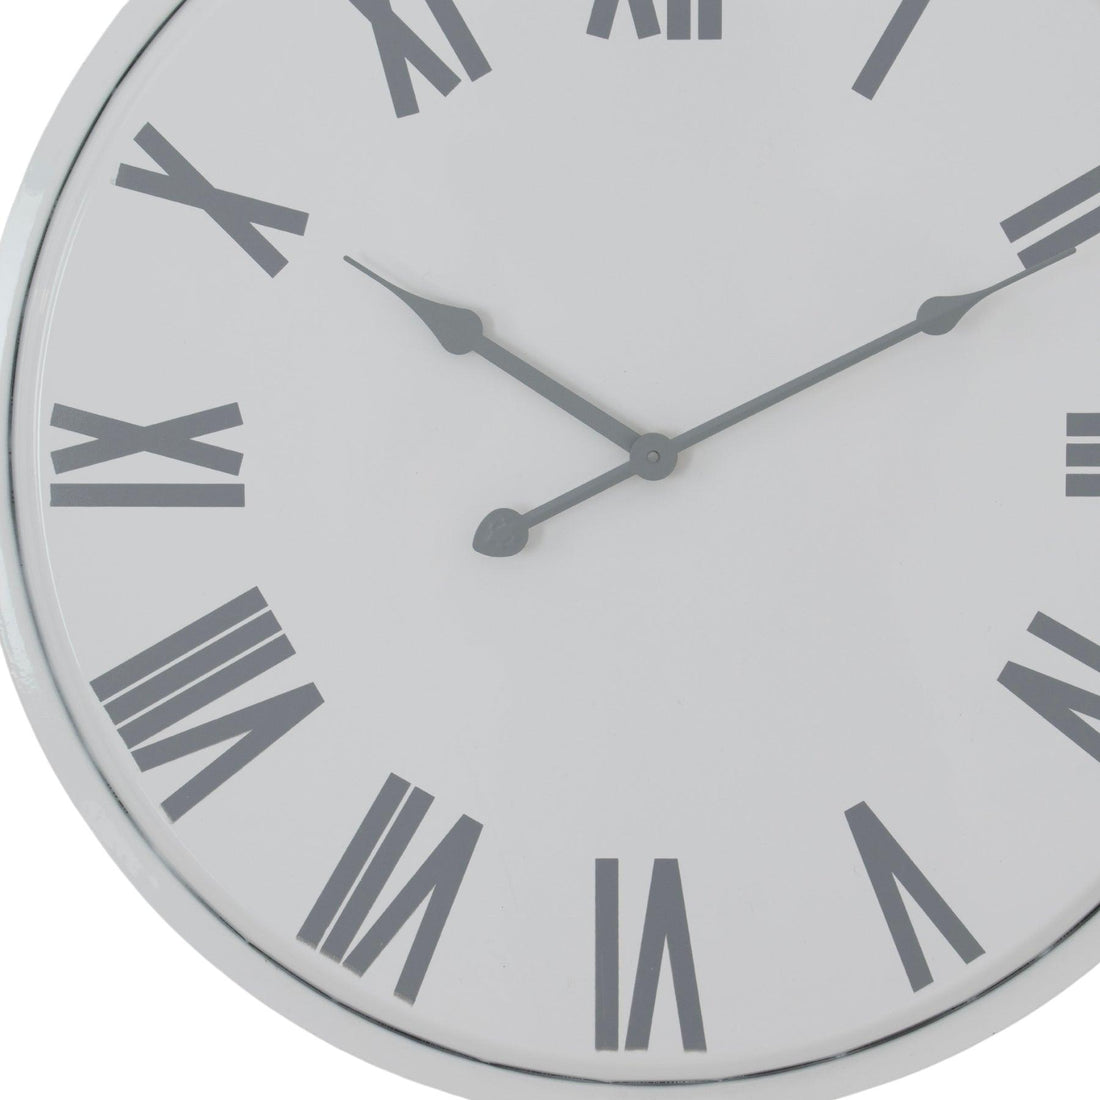 Flemings Wall Clock - £79.95 - Wall Clocks 